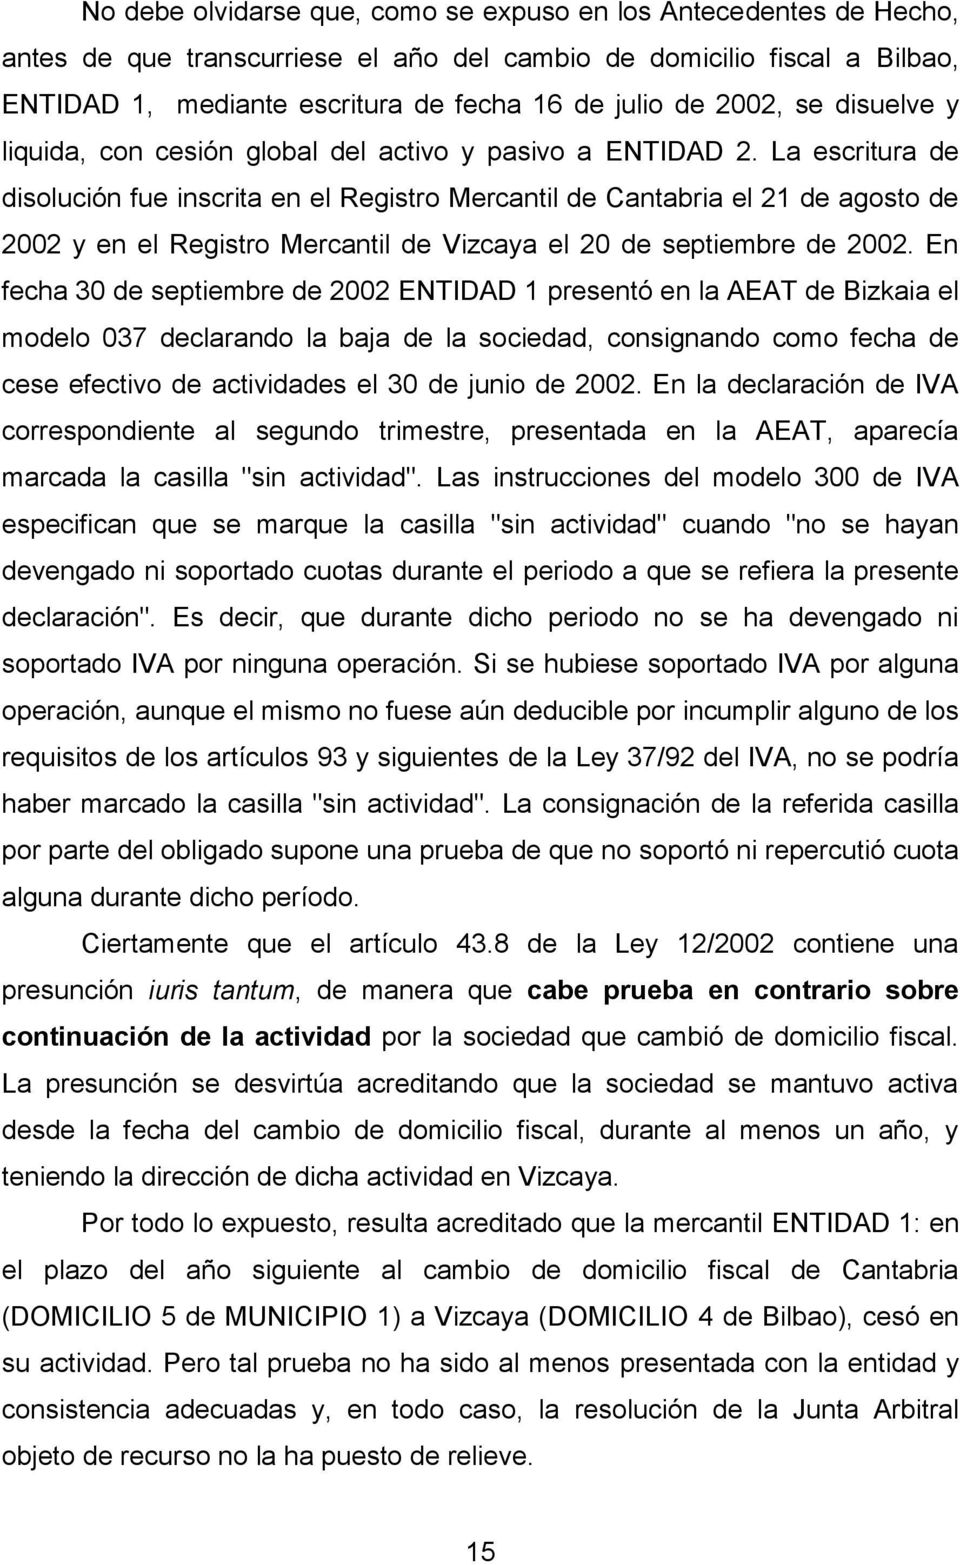 La escritura de disolución fue inscrita en el Registro Mercantil de Cantabria el 21 de agosto de 2002 y en el Registro Mercantil de Vizcaya el 20 de septiembre de 2002.